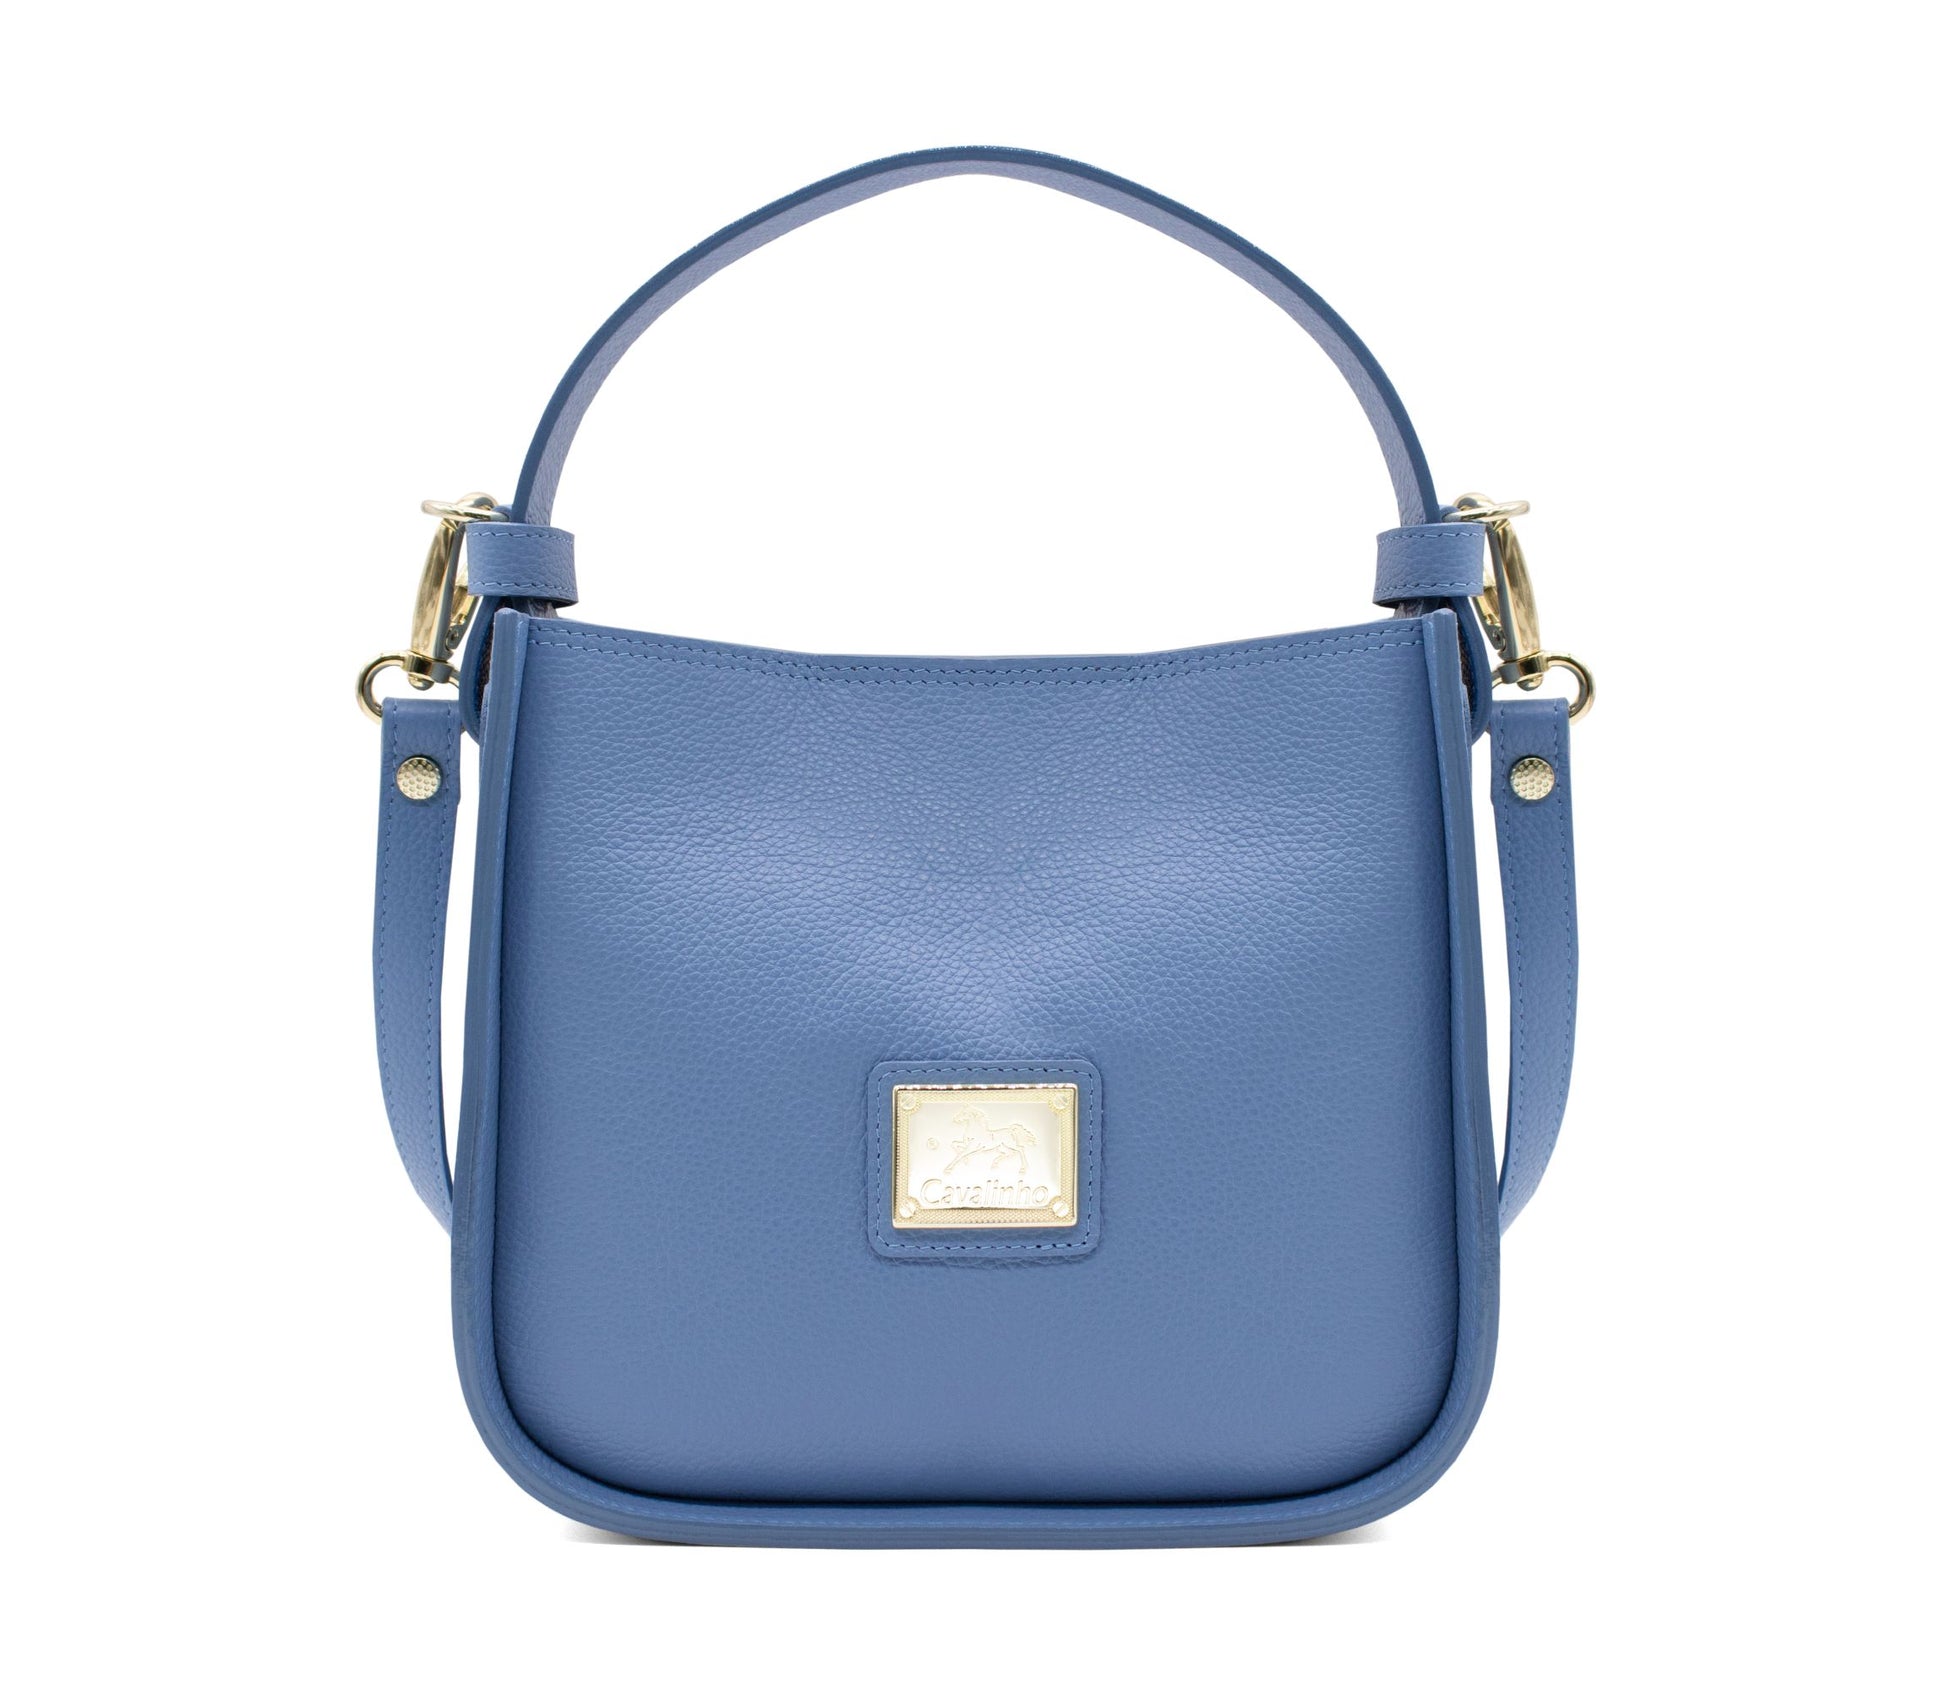 #color_ CornflowerBlue | Cavalinho Muse Leather Handbag - CornflowerBlue - 18300475.10_1